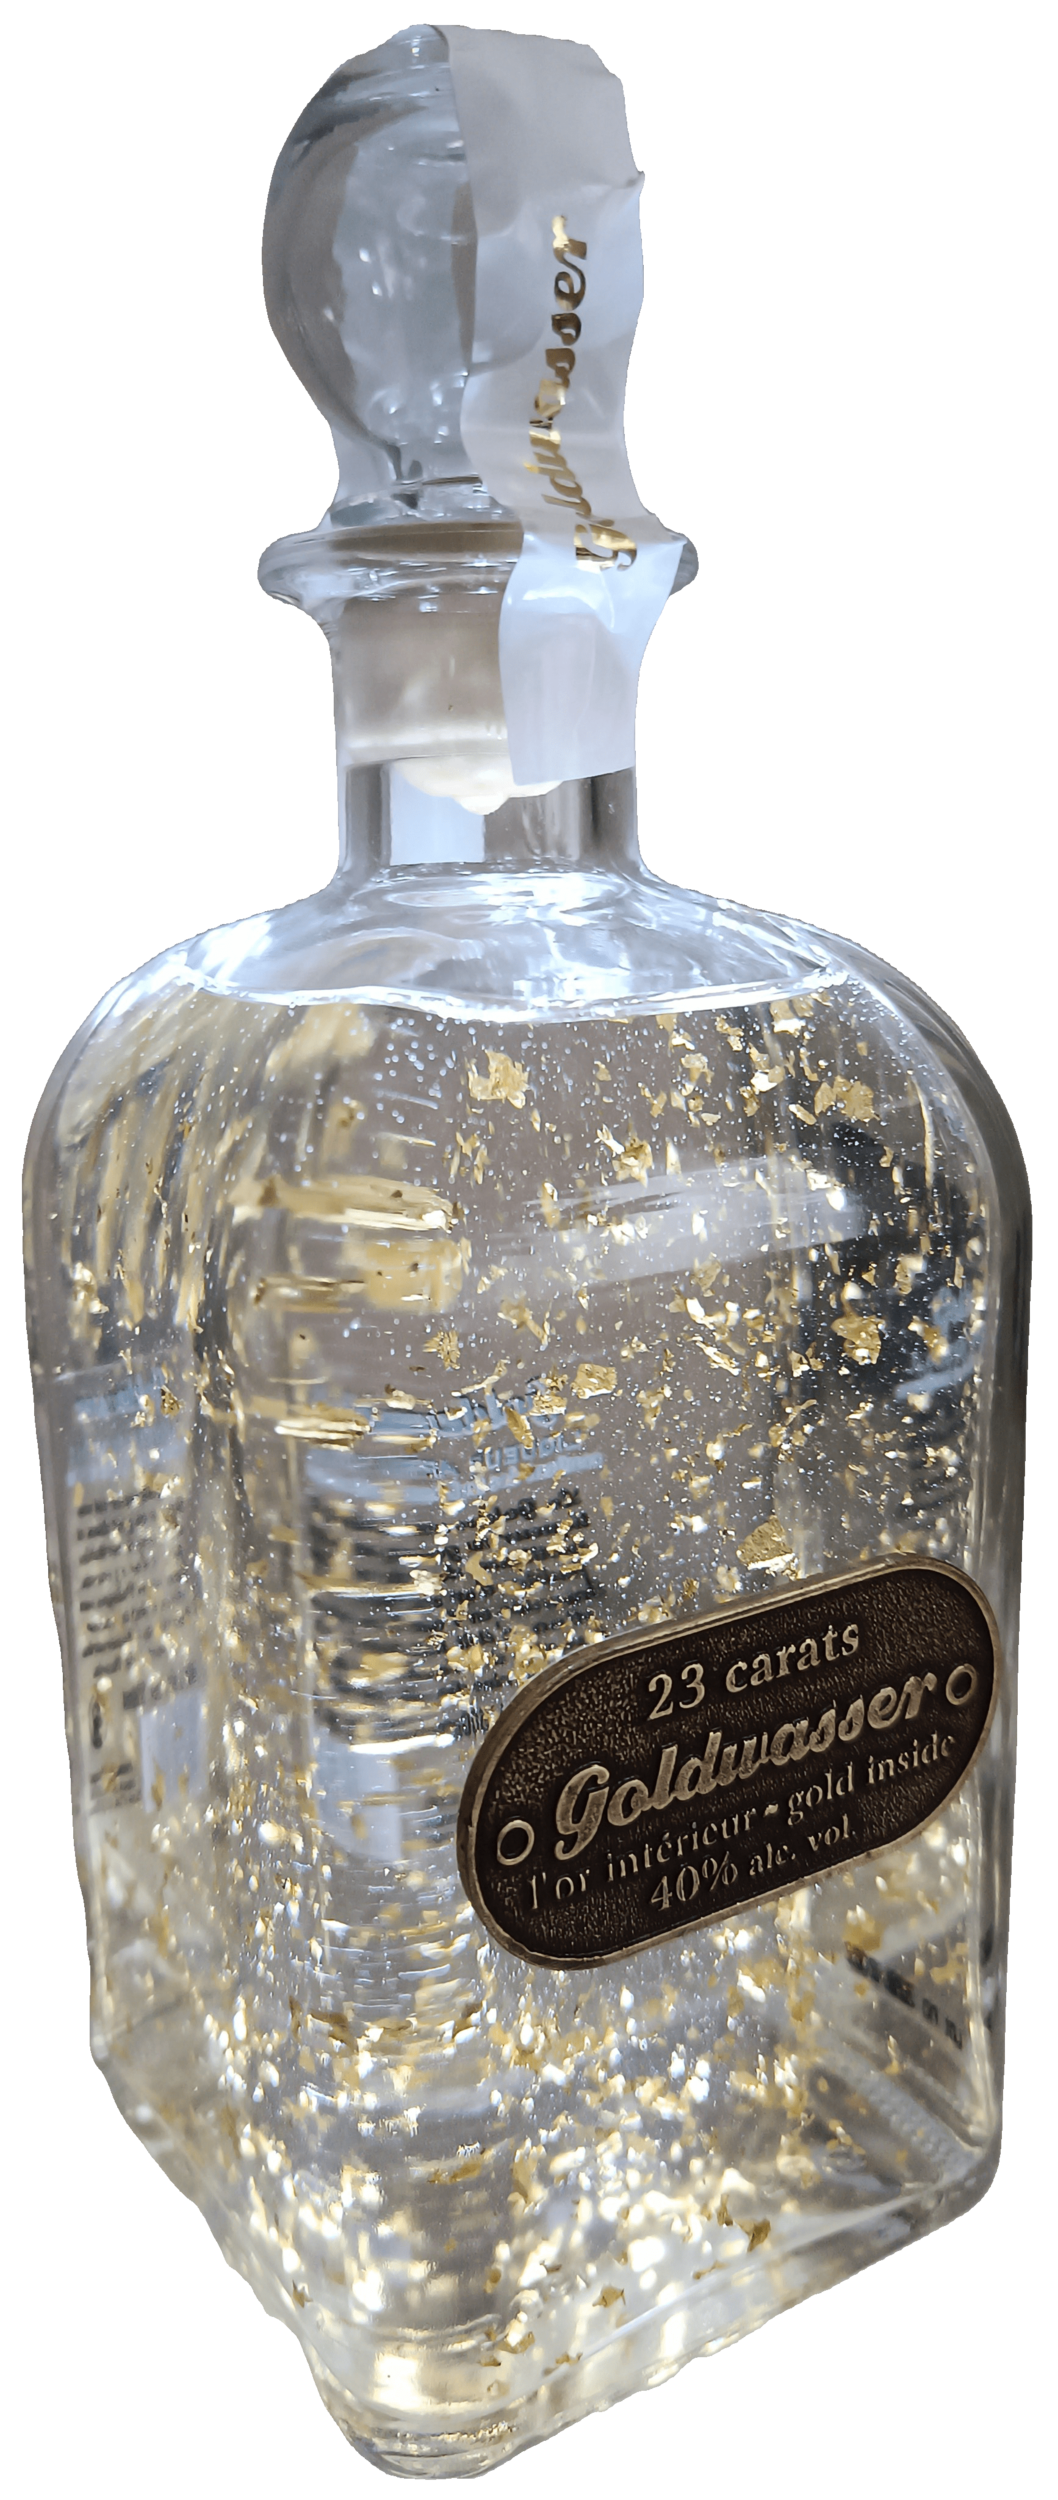 Vodka Goldwasser avec des Paillettes d’or 23 carats